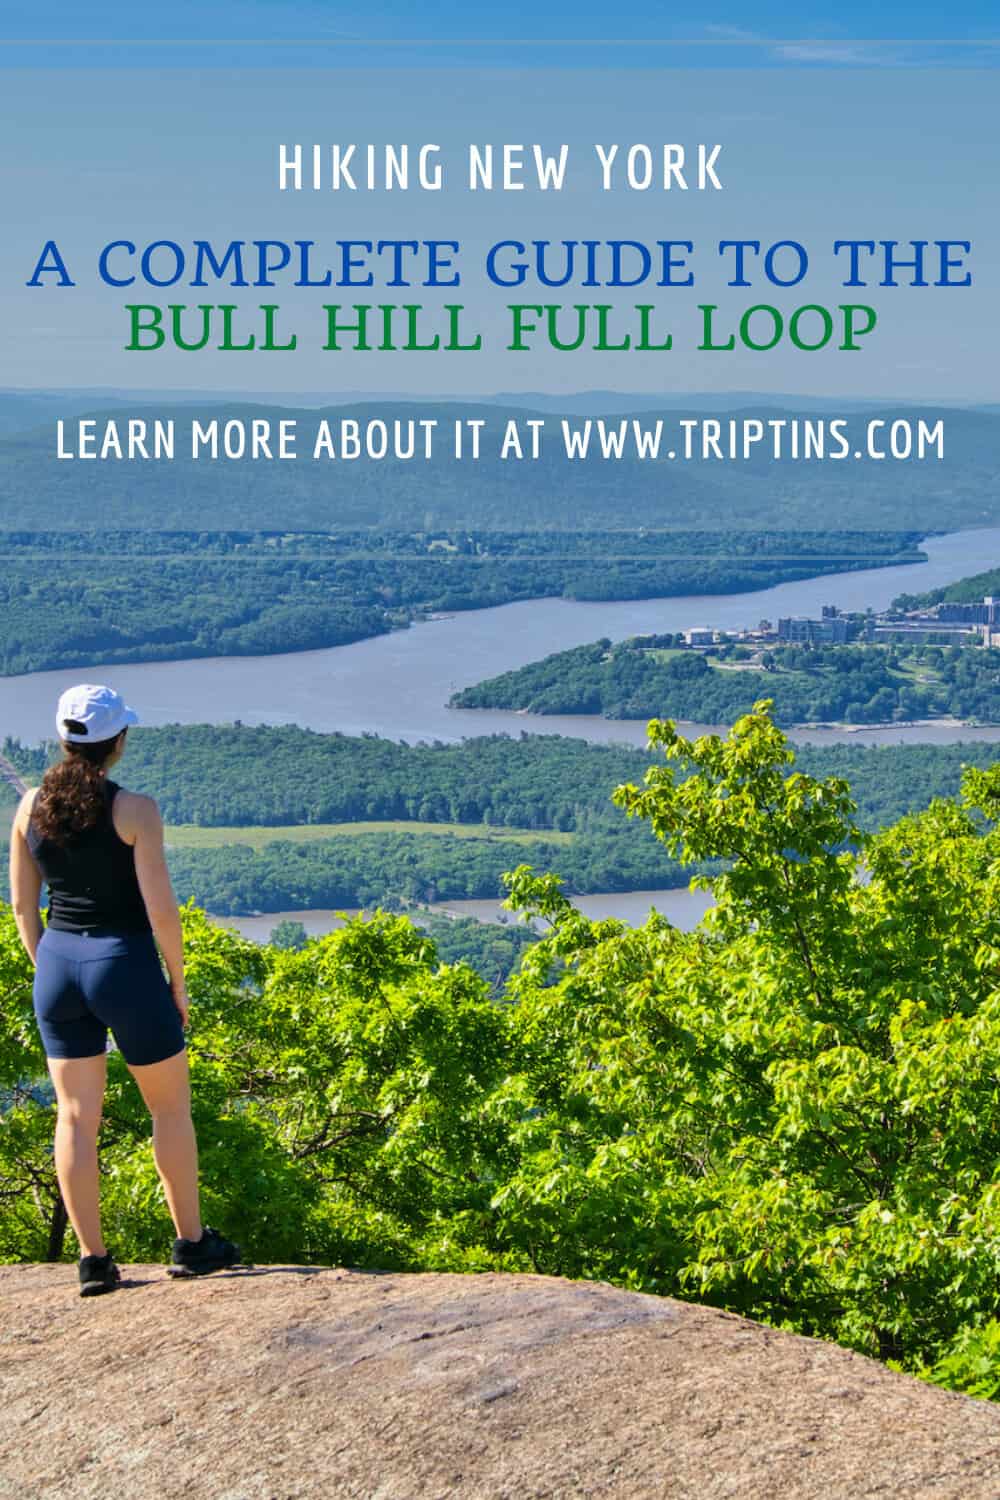 Bull Hill Full Loop Hike